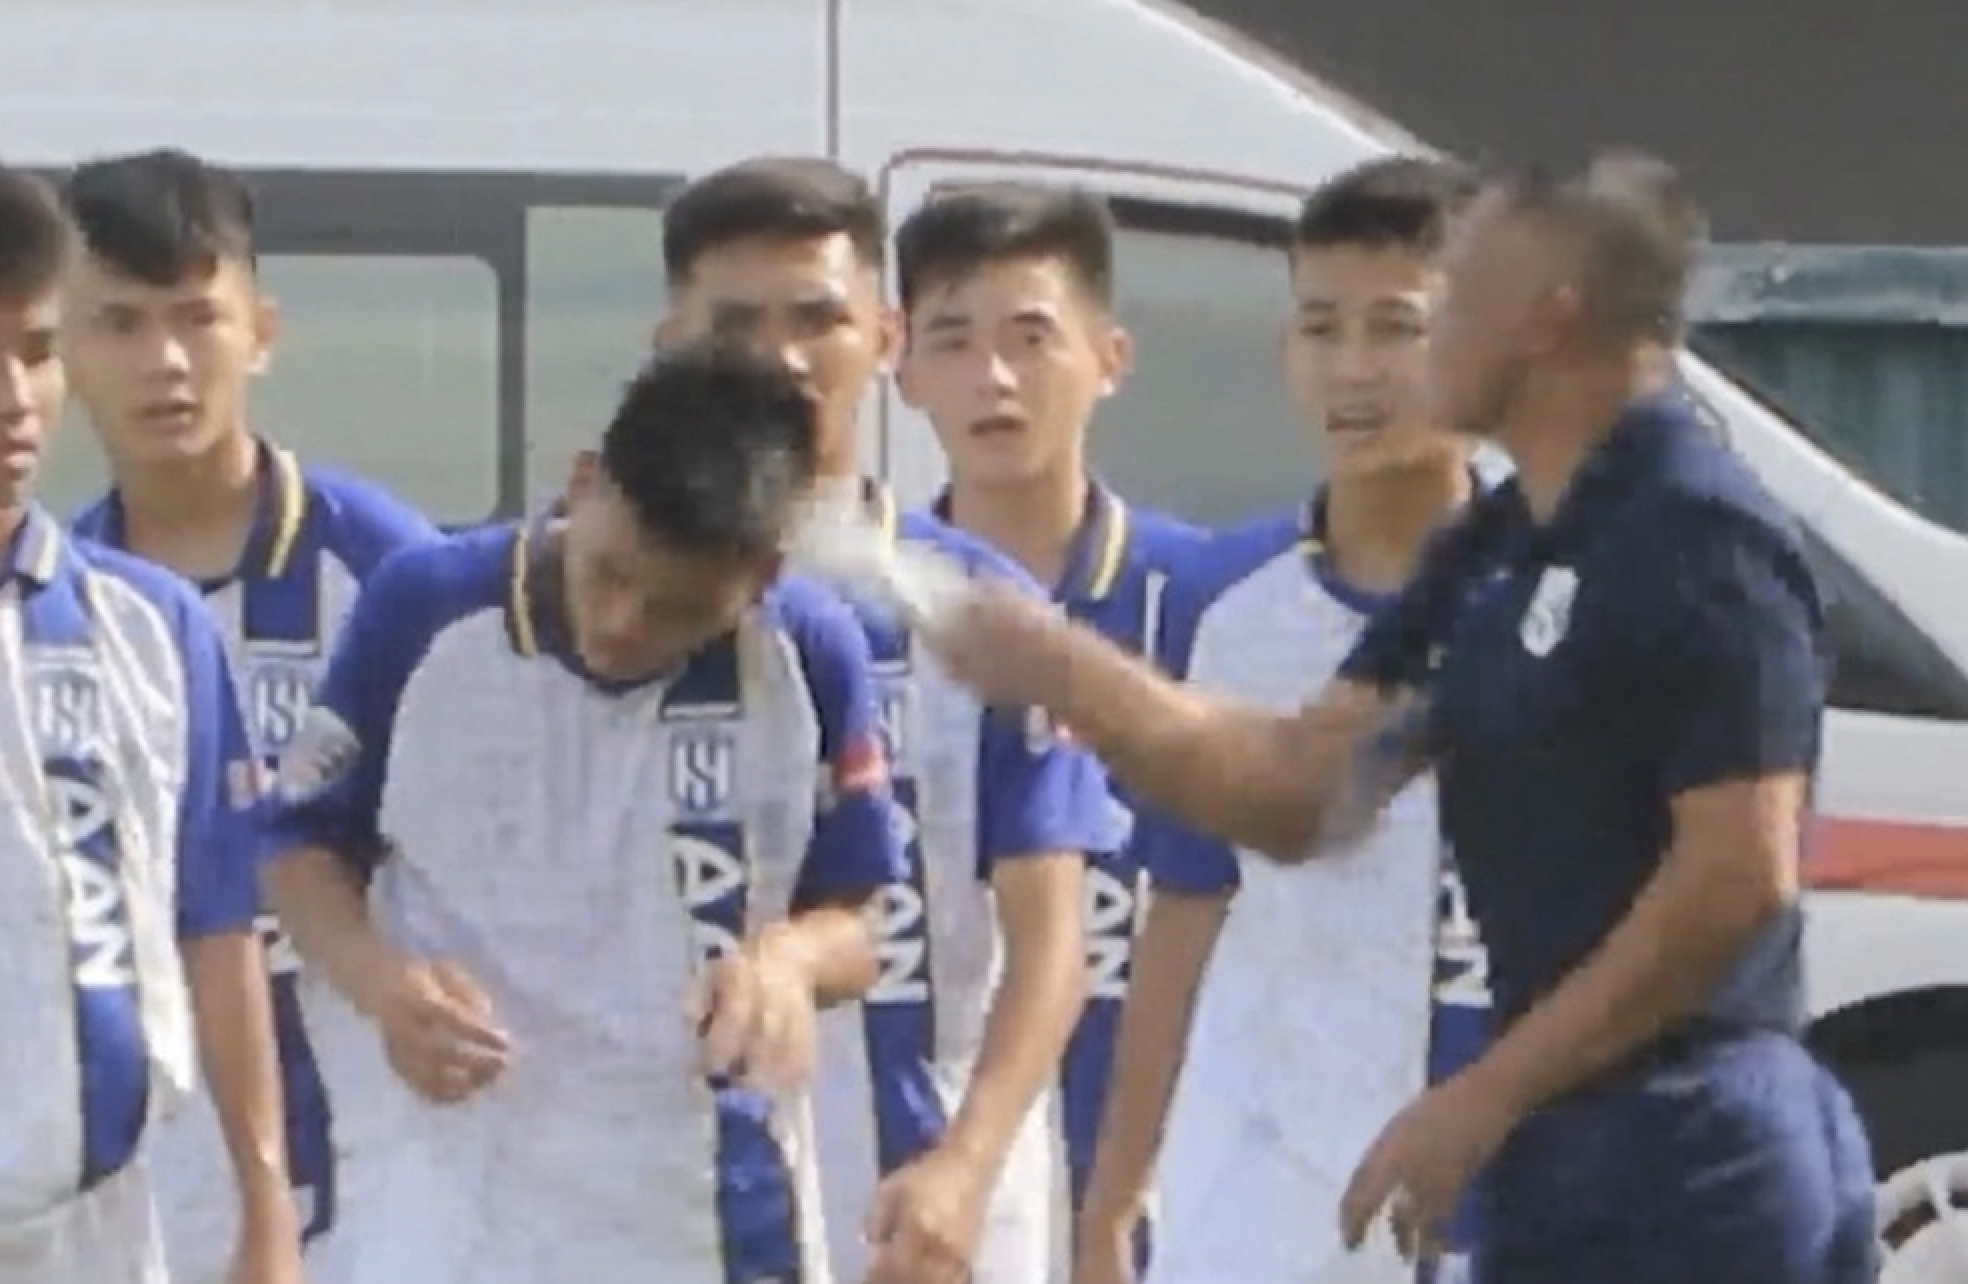 Huấn luyện viên Ngô Quang Trường đánh học trò sau màn ăn mừng khiêu khích đối thủ. Ảnh: Cắt từ clip